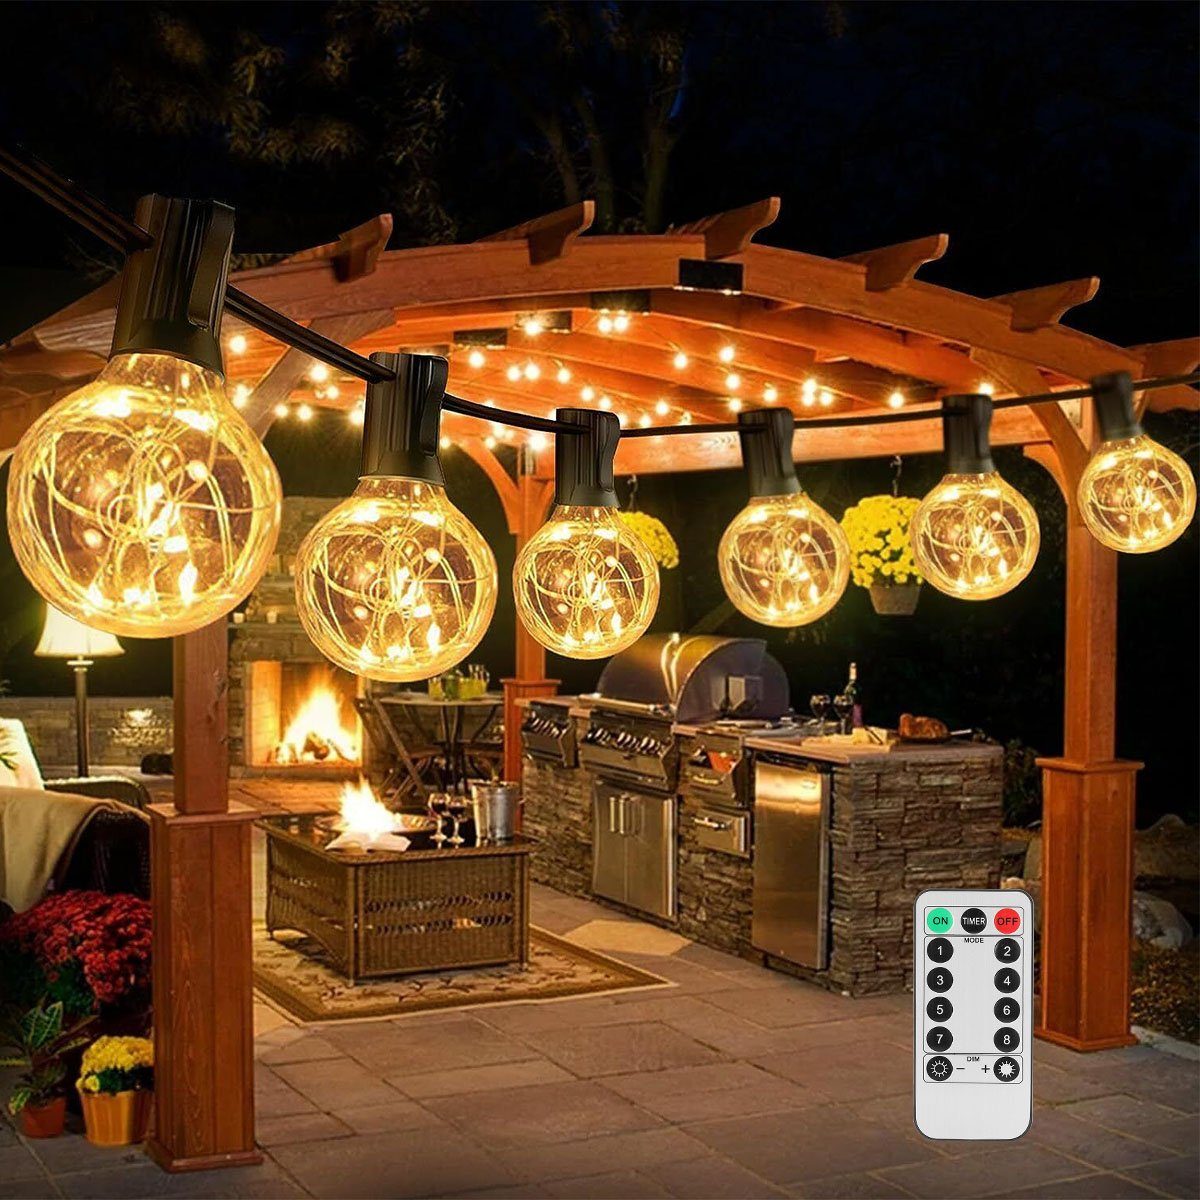 oyajia LED-Lichterkette LED Lichterkette Außen, 10M Lichterkette mit 25+2 Stk. G40 Glühbirnen, IP44 Wasserdicht Innen/Außen Lichterkette für Garten, Terrasse, Party | Lichterketten